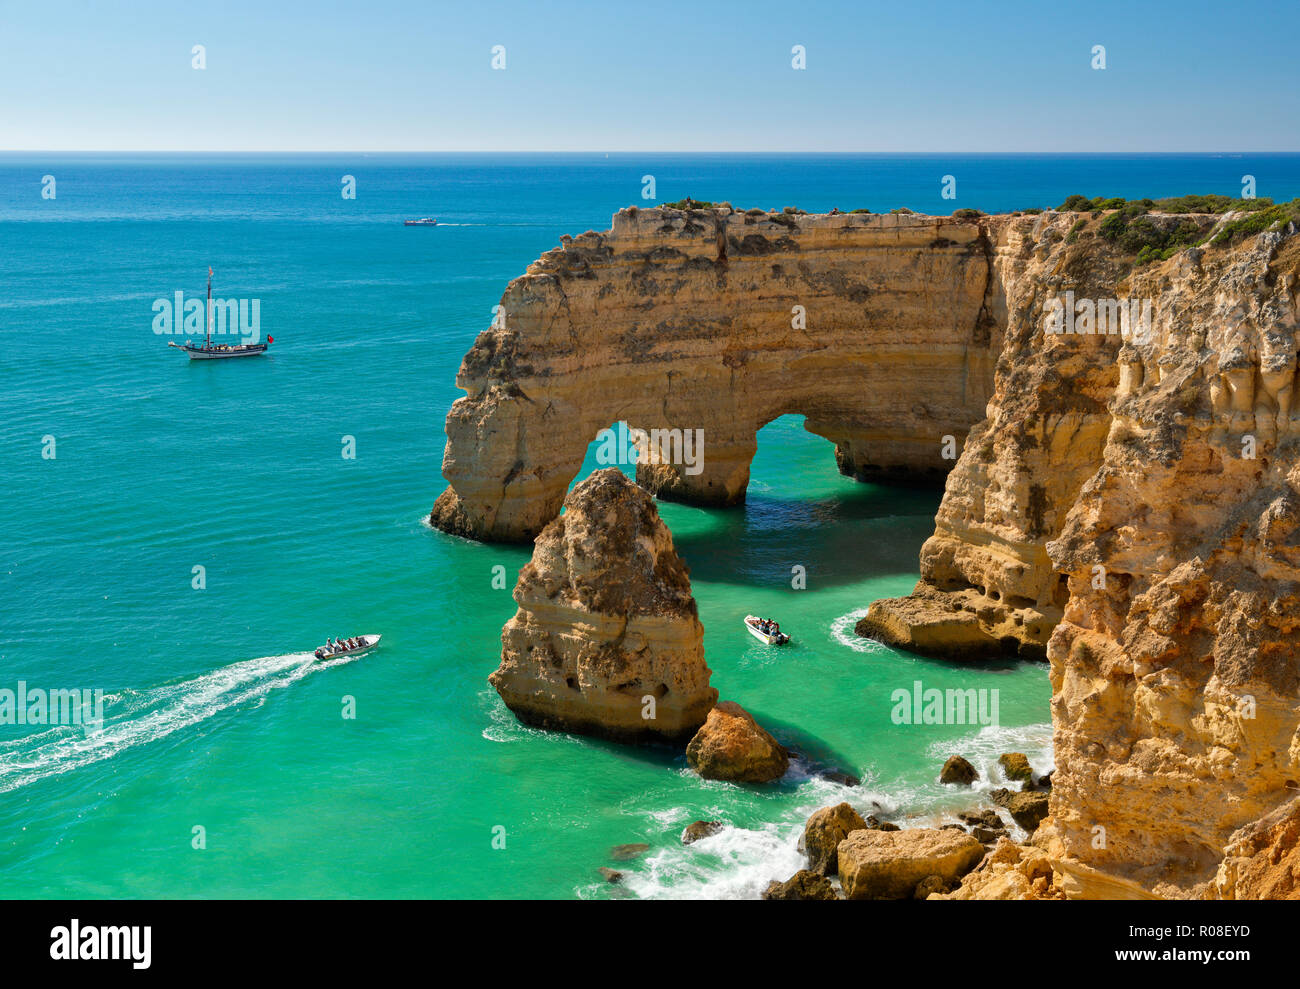 Praia da Marinha archi di roccia, Armacao de Pera, Algarve, PORTOGALLO Foto Stock